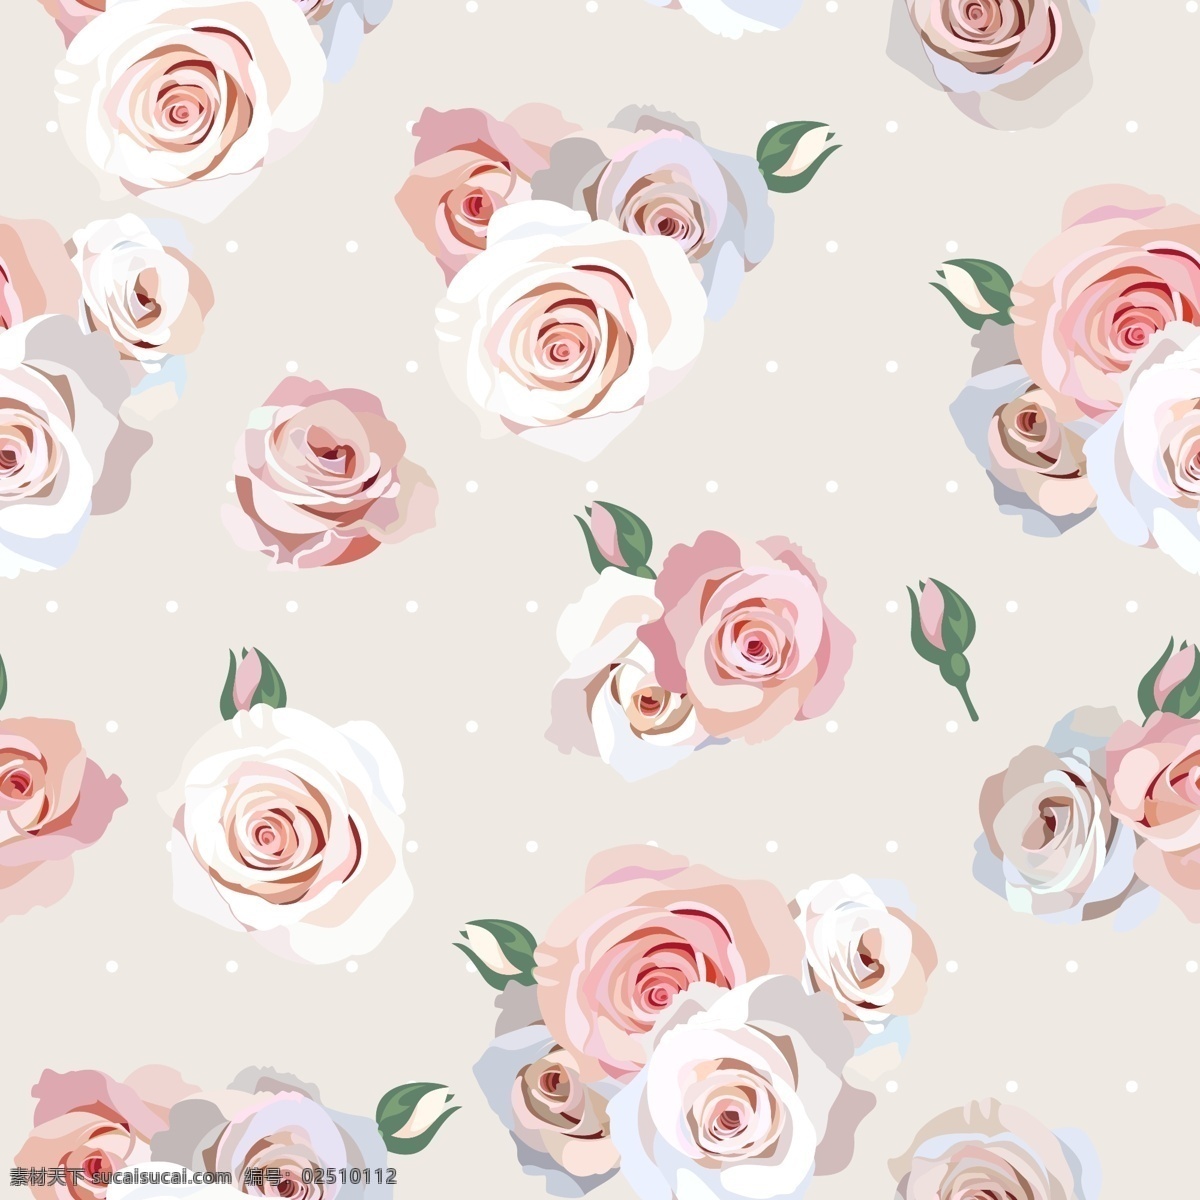 粉色 浪漫 玫瑰花 背景 底纹 爱情 花朵